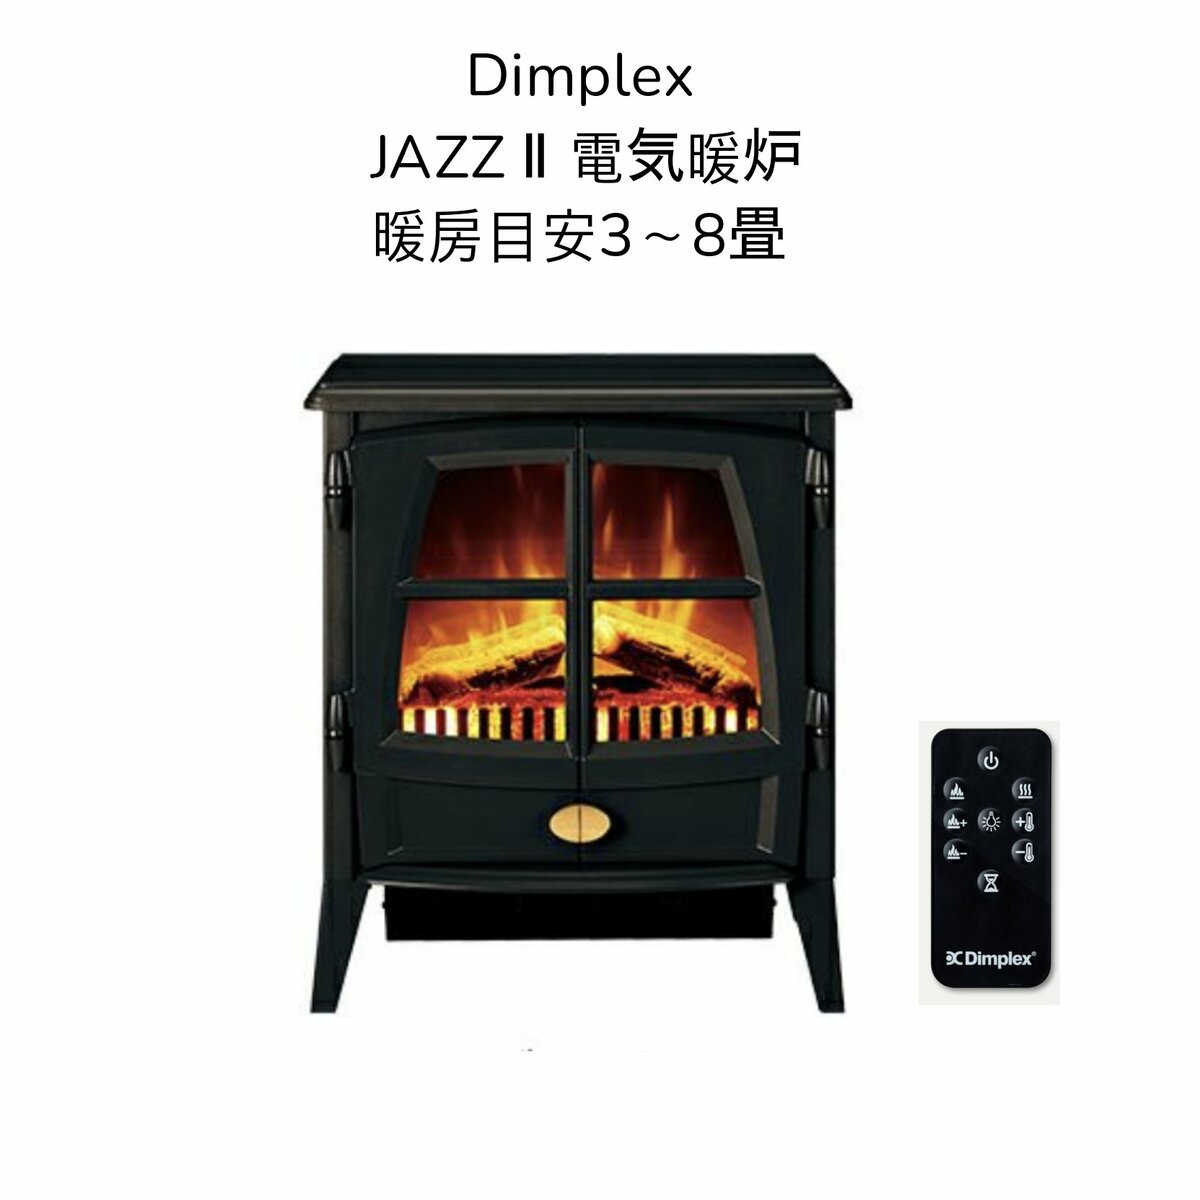 【送料無料】Dimplex Jazz 電気暖炉 JAZ12J 暖房目安3〜8畳 ブラック おしゃれ リビング